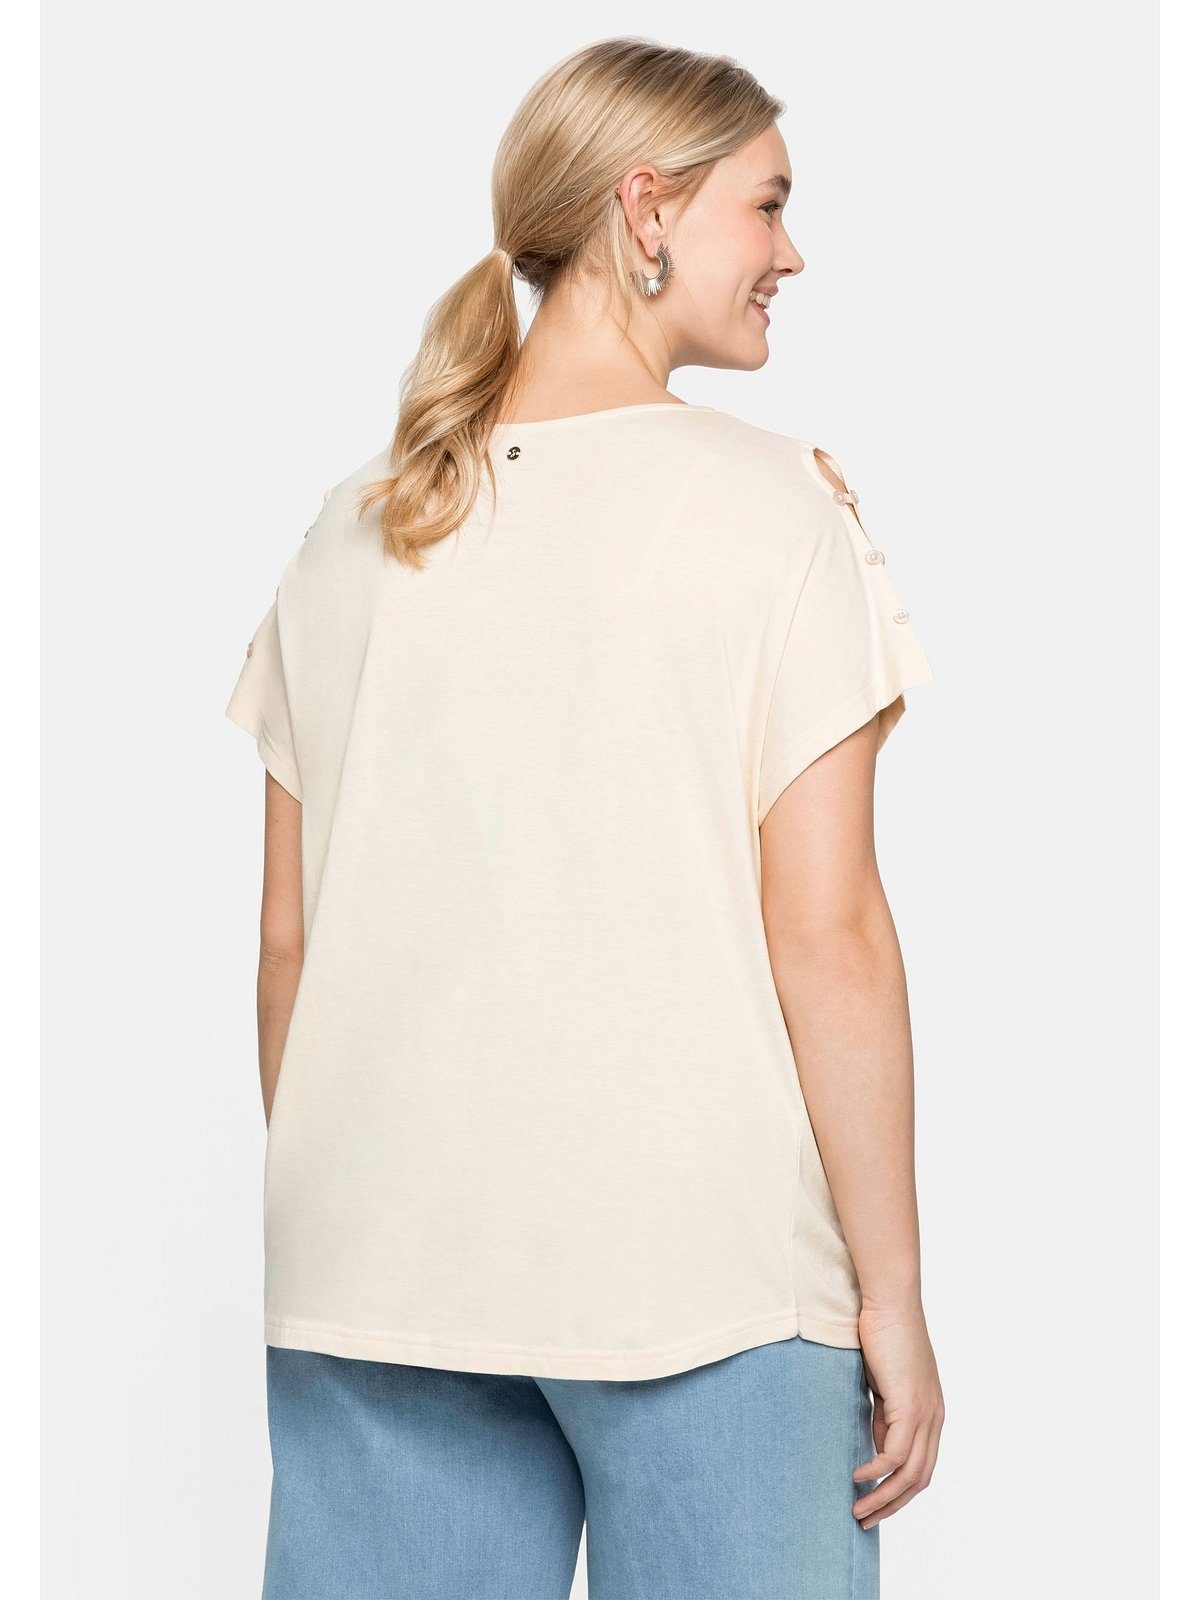 Sheego T-Shirt Große Größen in mit A-Linie Schulterpartie, offener leichter